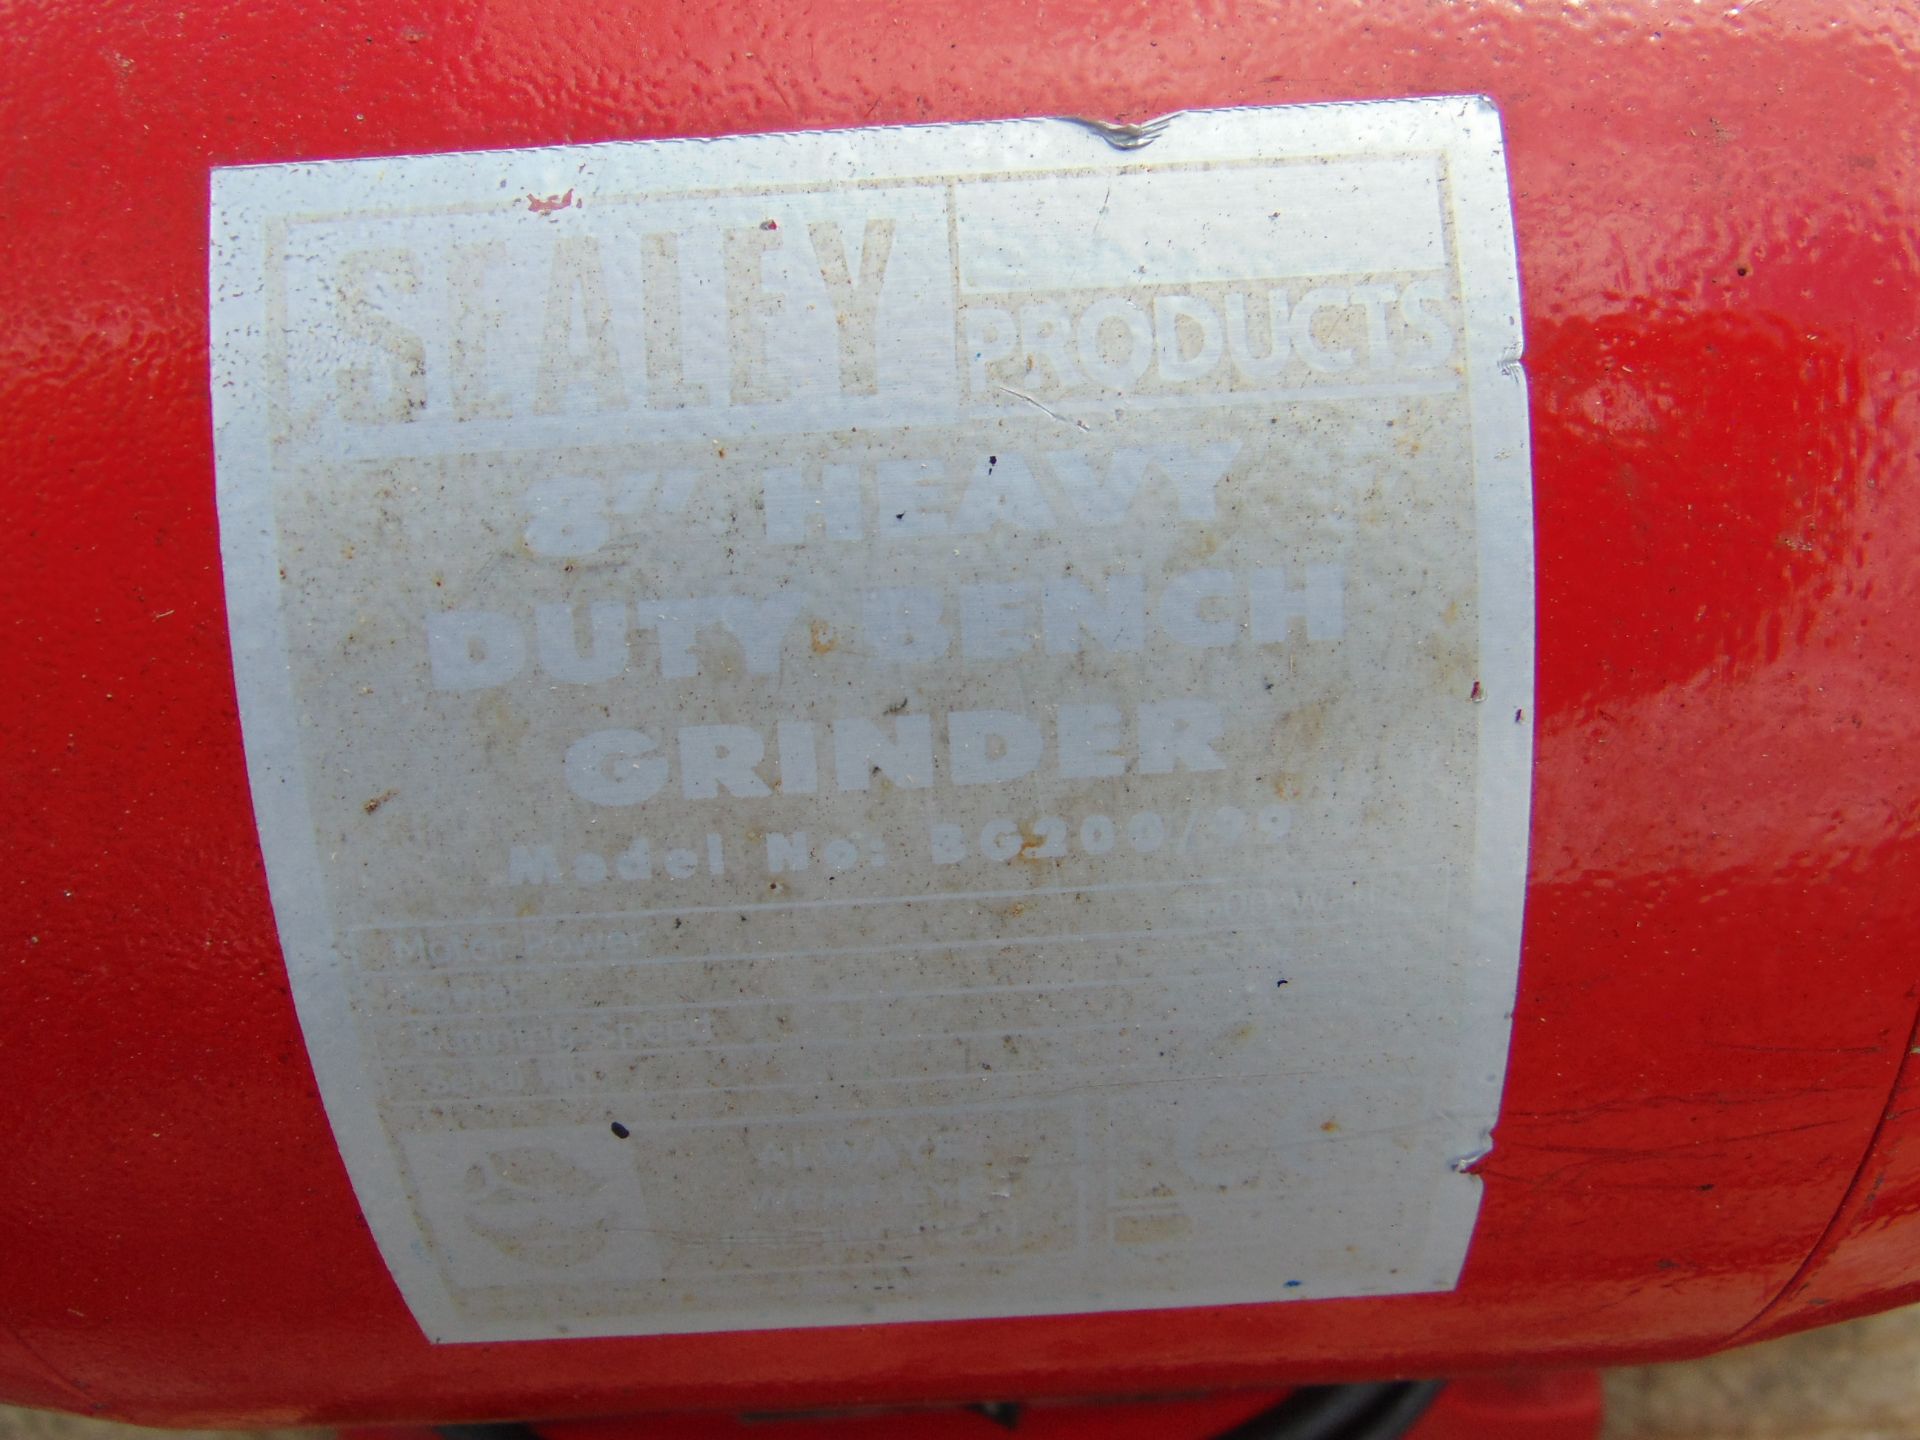 Sealey BG200/99 Bench Grinder - Image 4 of 4